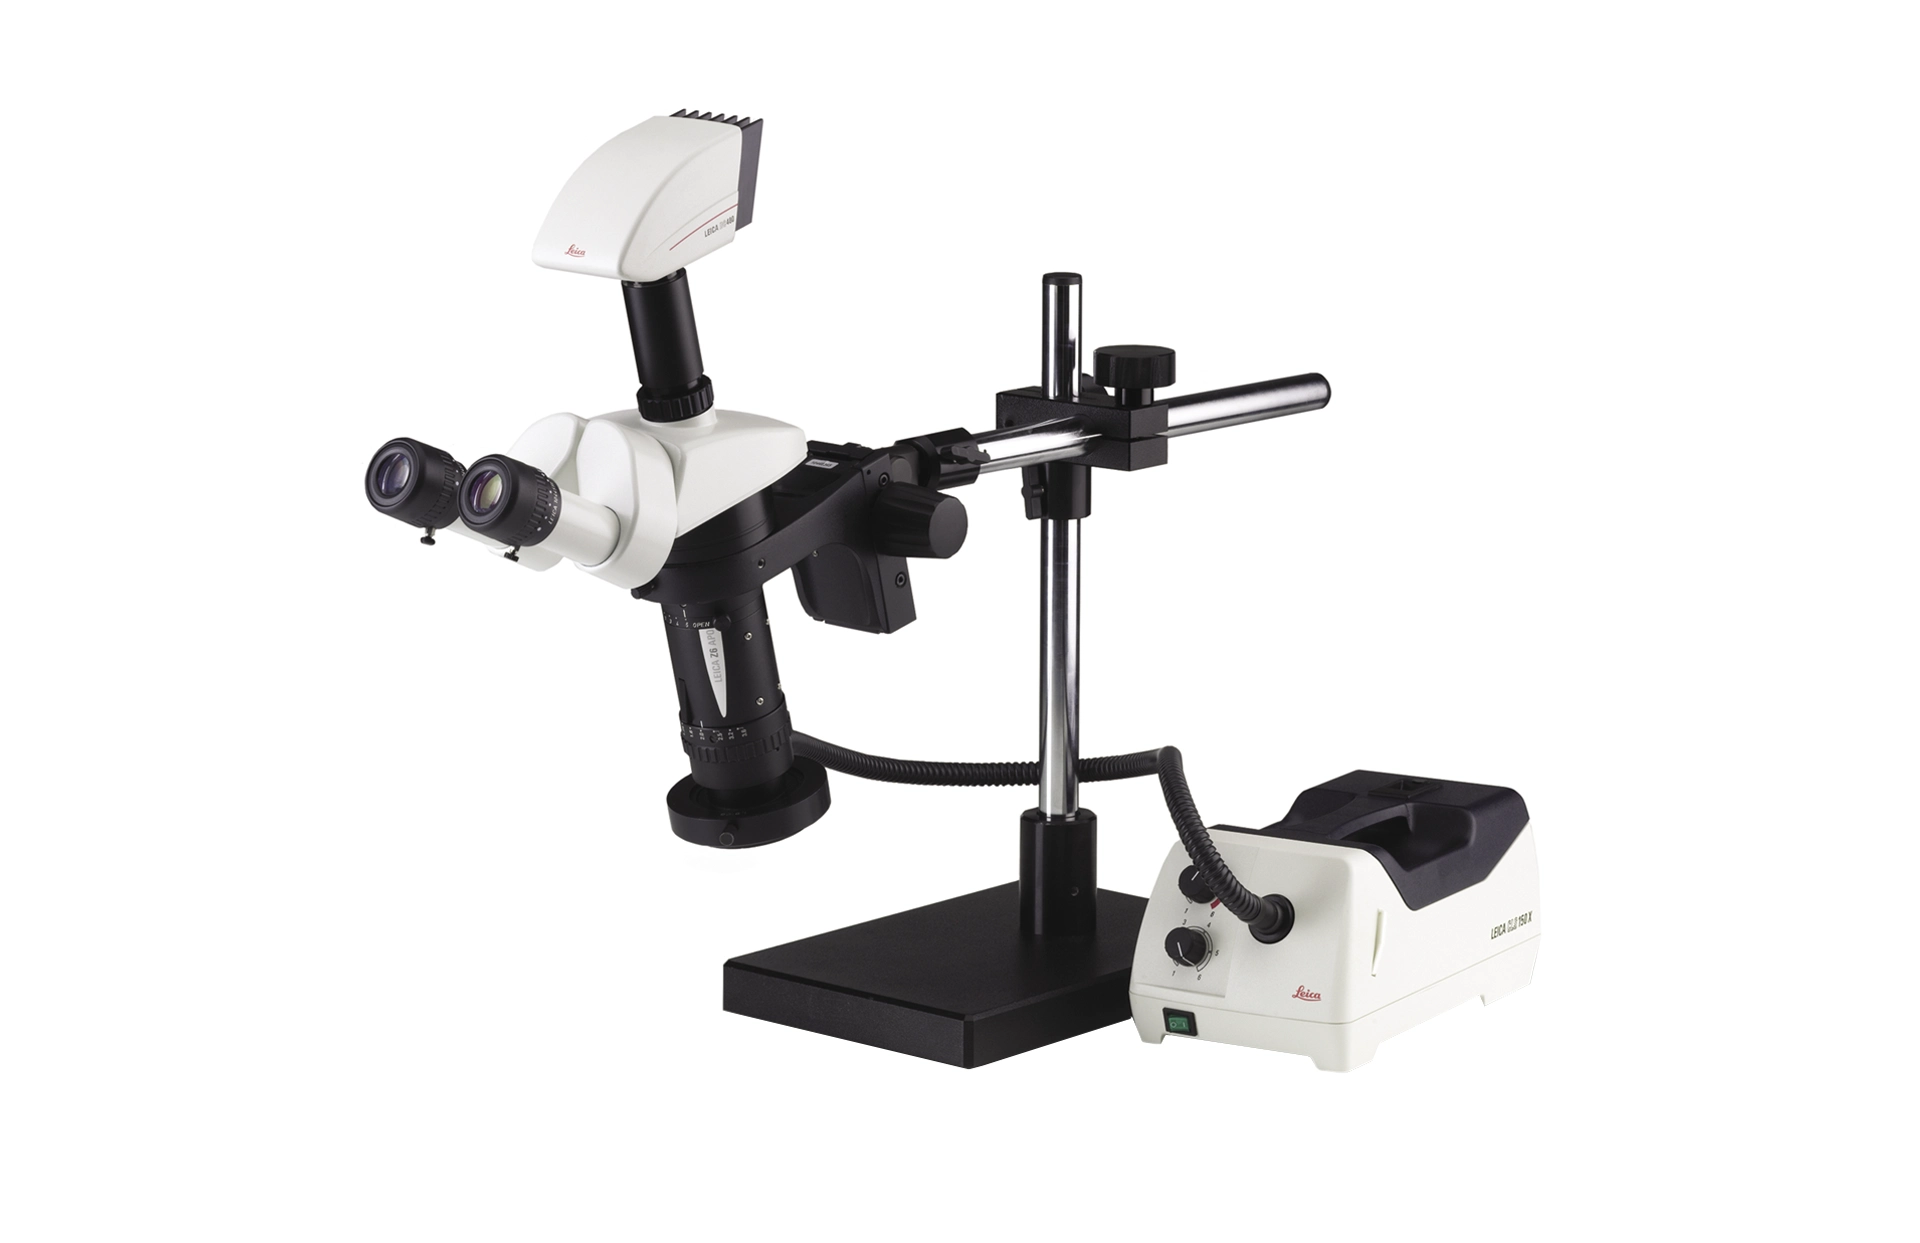 Leica Z16 APO Makroskop mit Binotubus und Kaltlichtquelle mit Lichtleiter, rechtsseitig